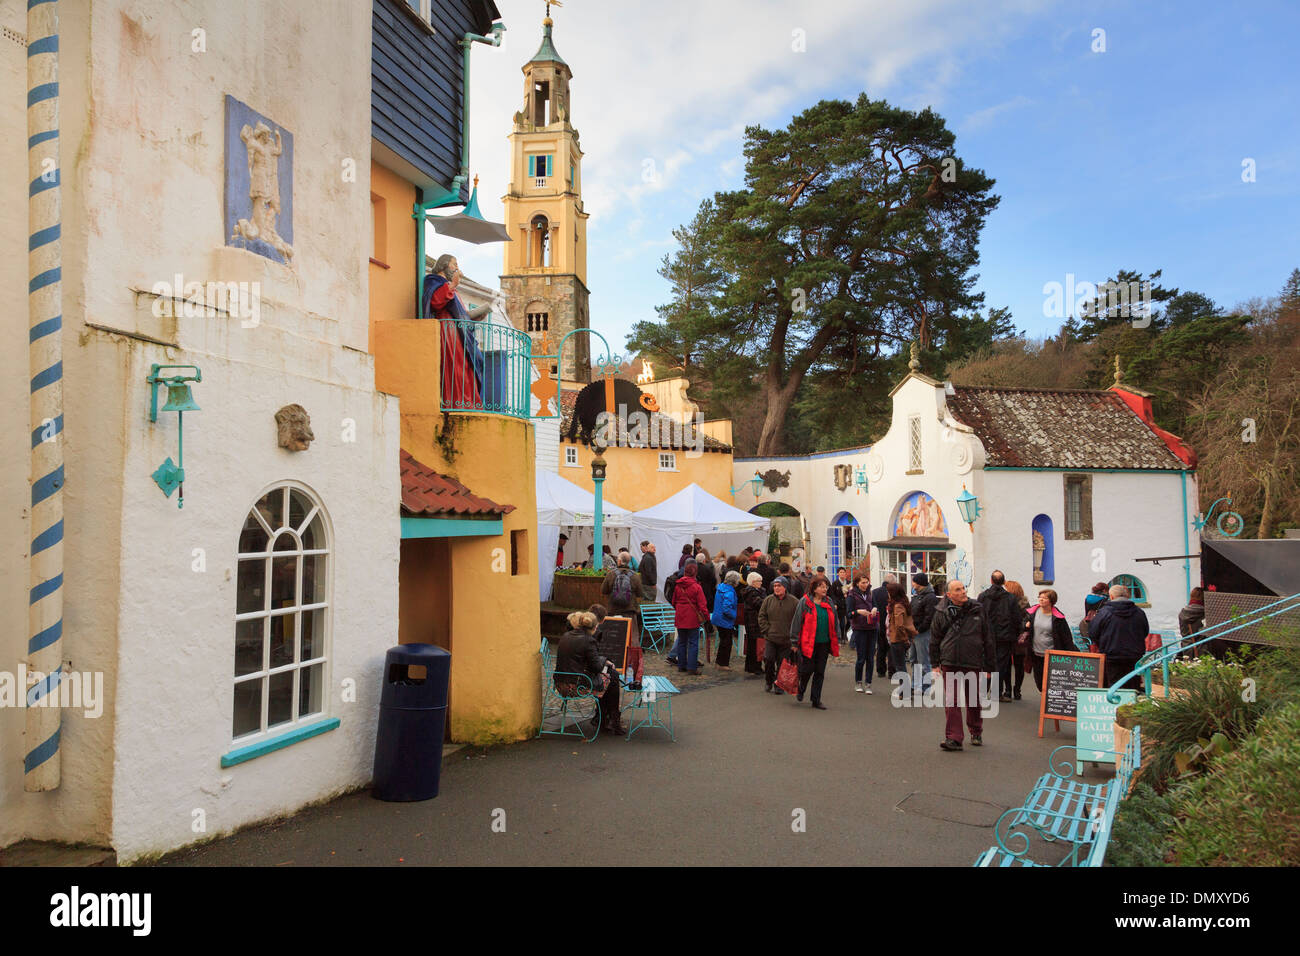 Los visitantes a la comida de Navidad y Feria de Artesanía en estilo italiano turistas" pueblo de Portmeirion, Gwynedd, al norte de Gales, Reino Unido, Gran Bretaña Foto de stock